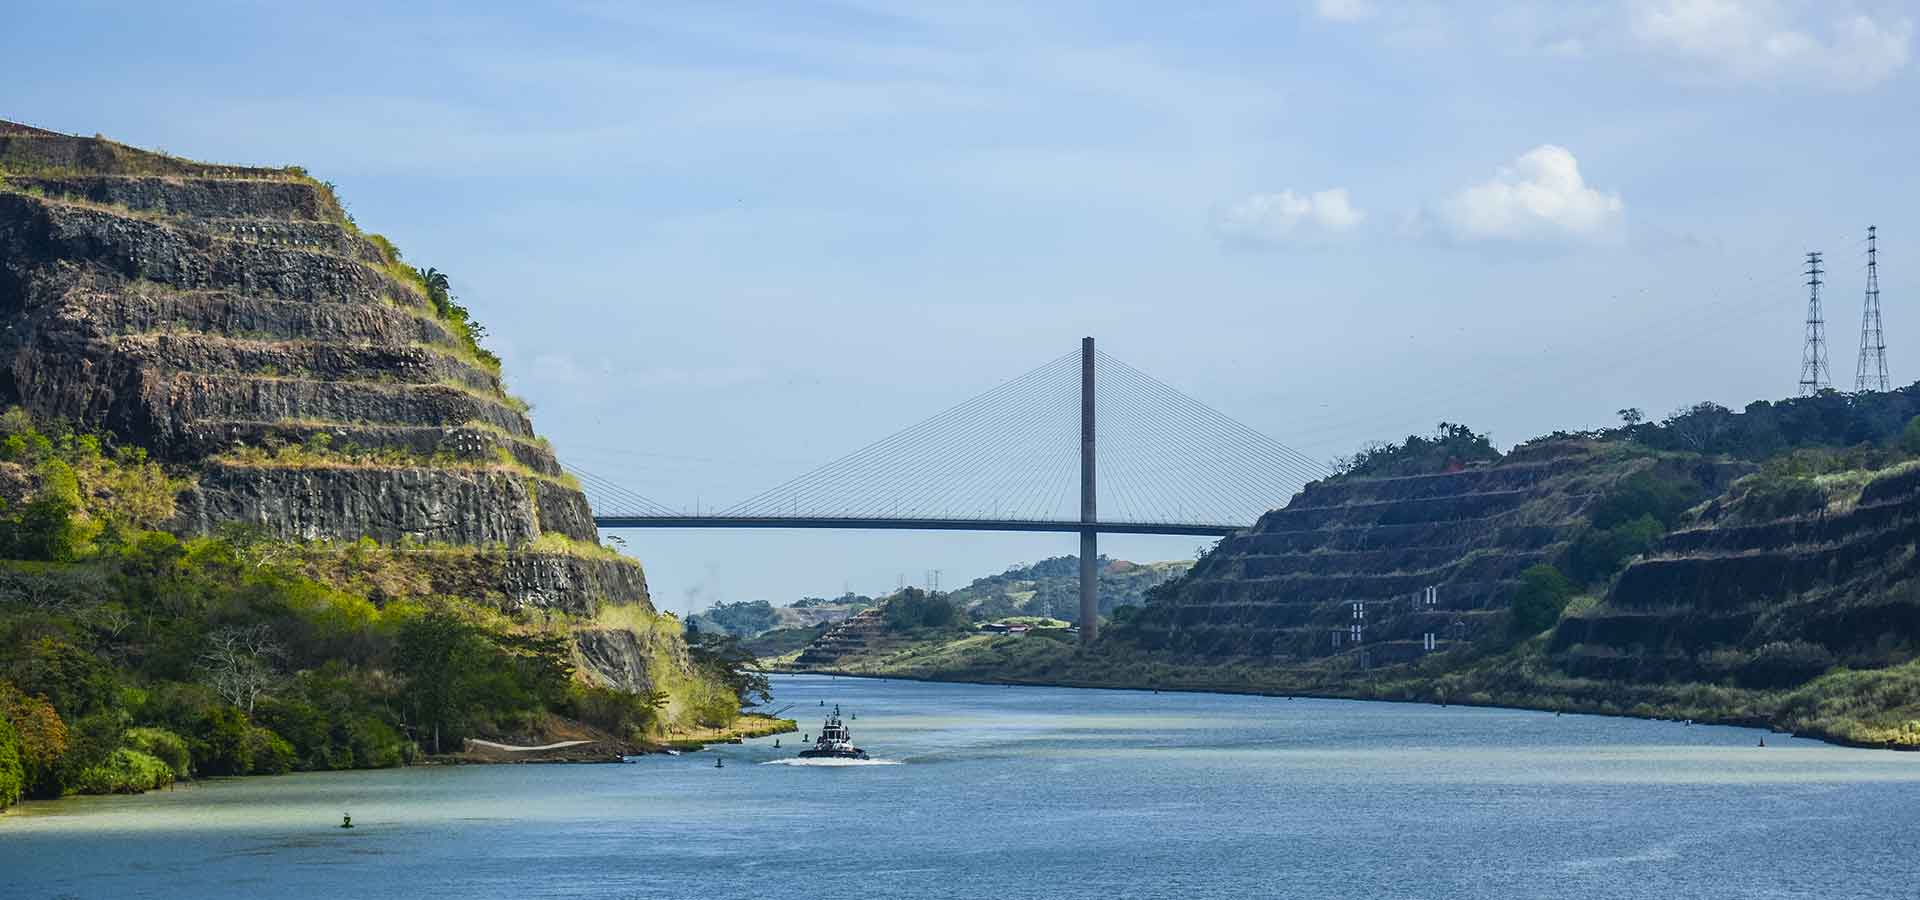 Le canal de Panama : prouesse technologique du 20e siècle